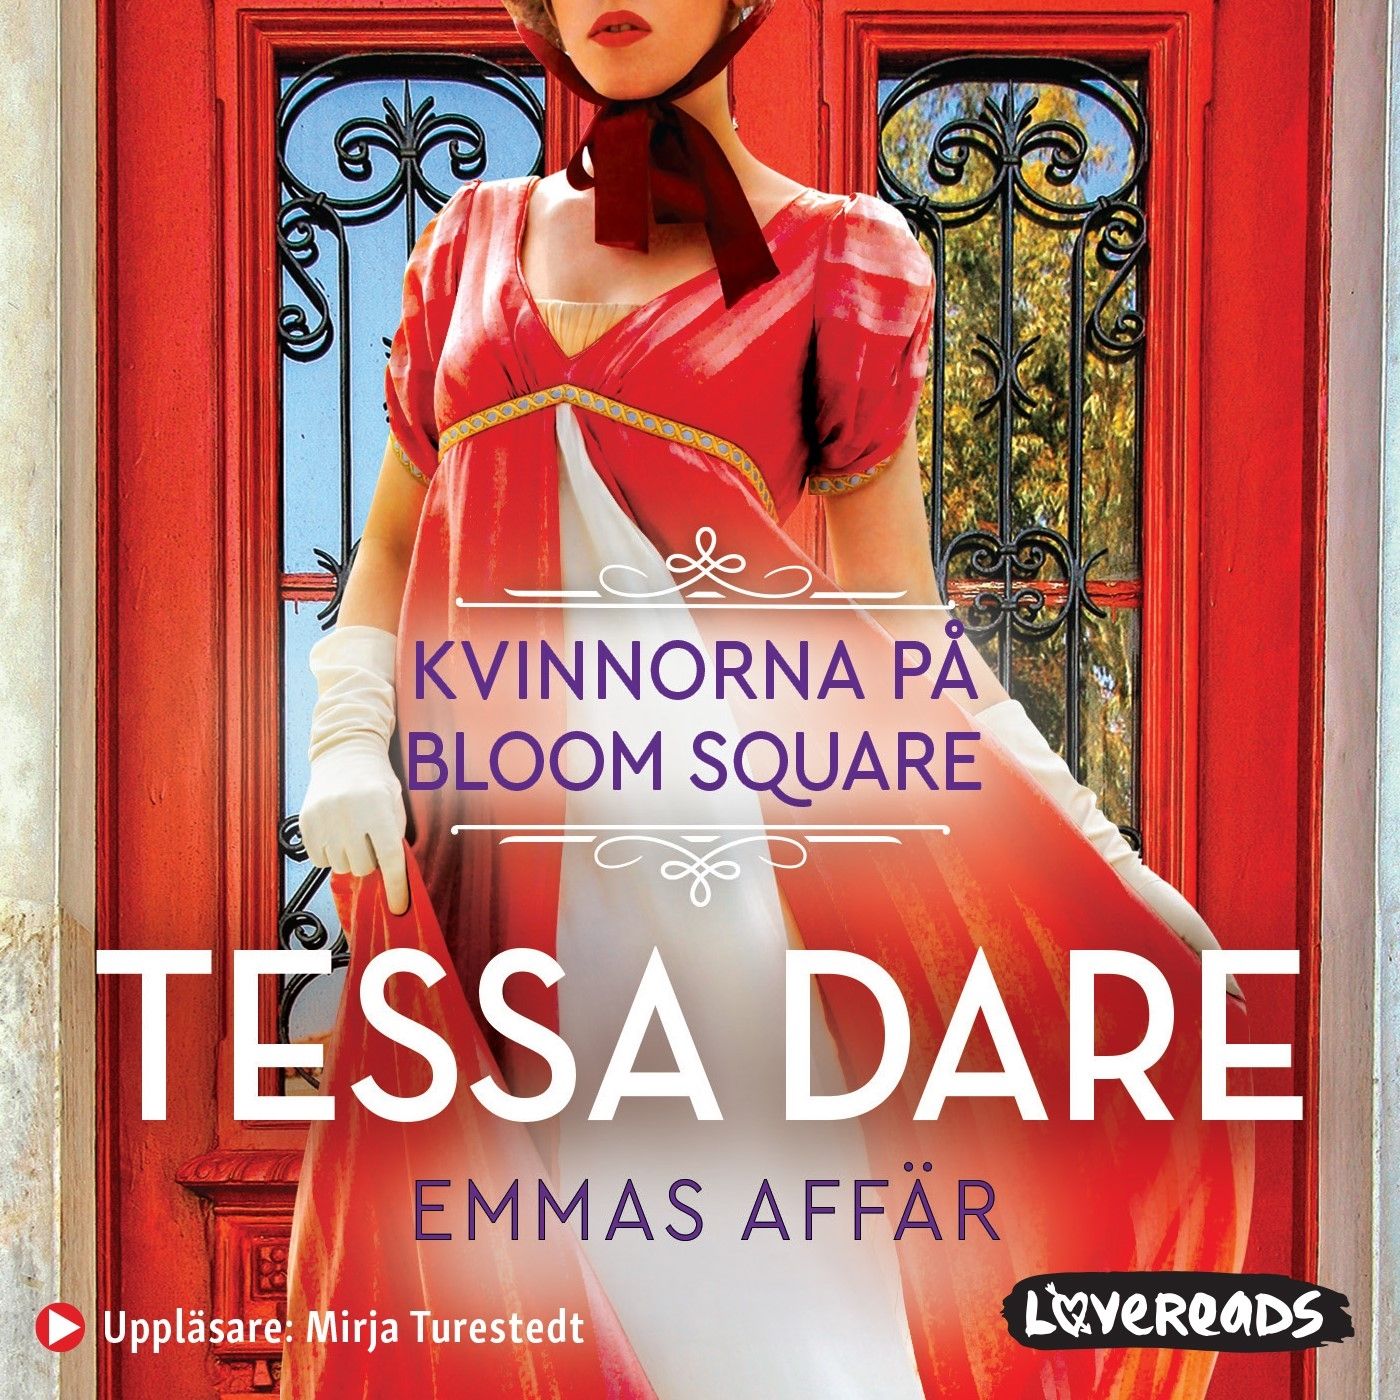 Emmas affär, ljudbok av Tessa Dare